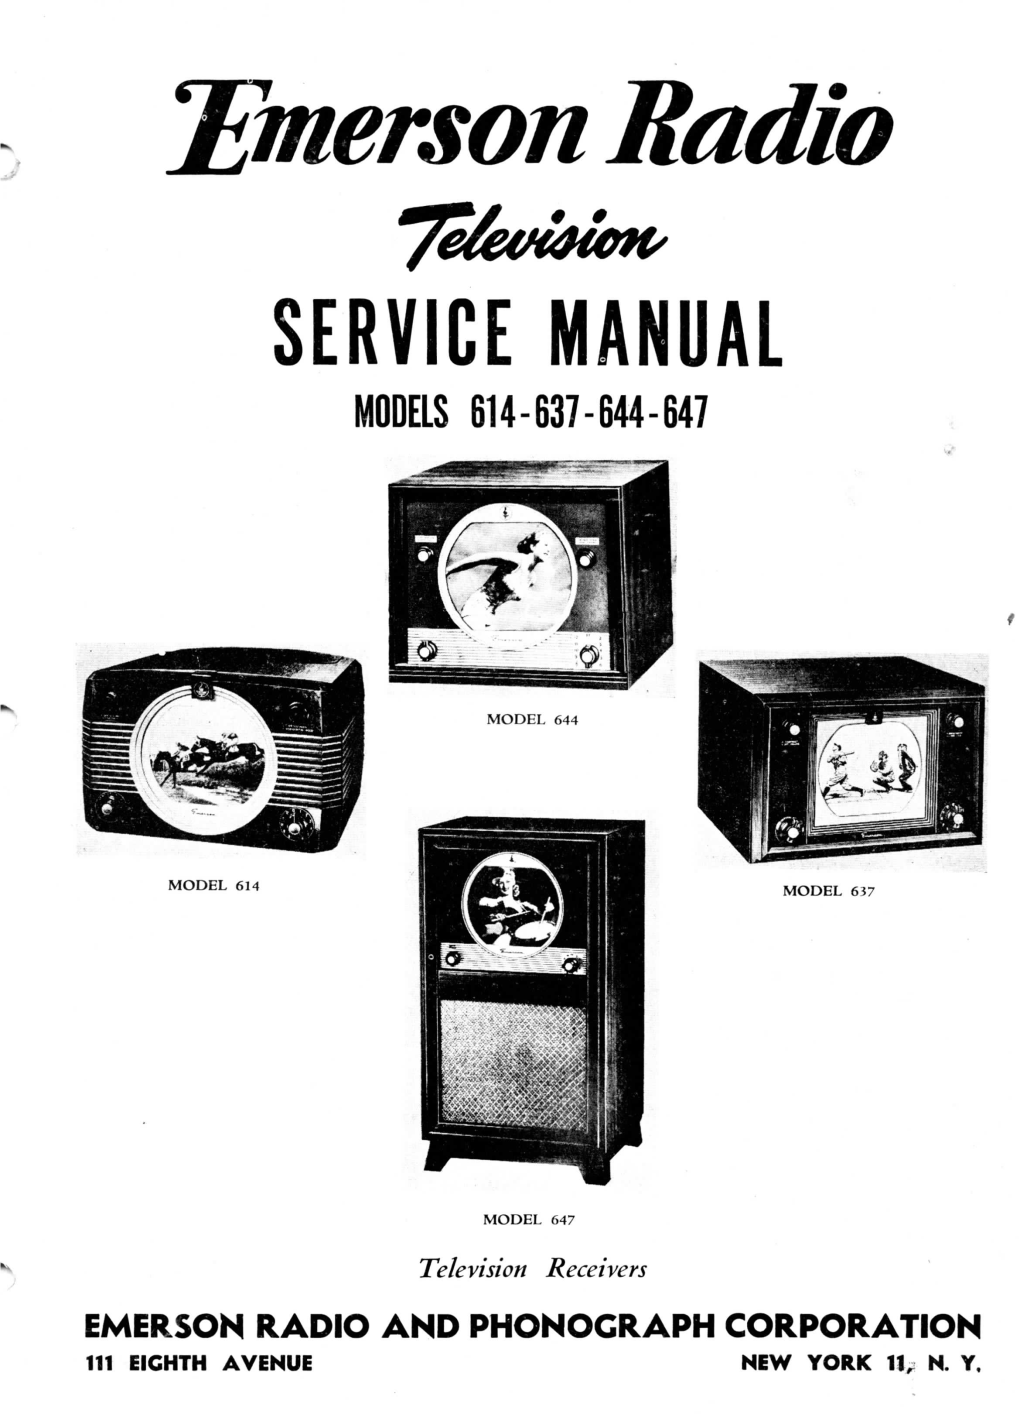 Service Manual Models 614-637-644-647